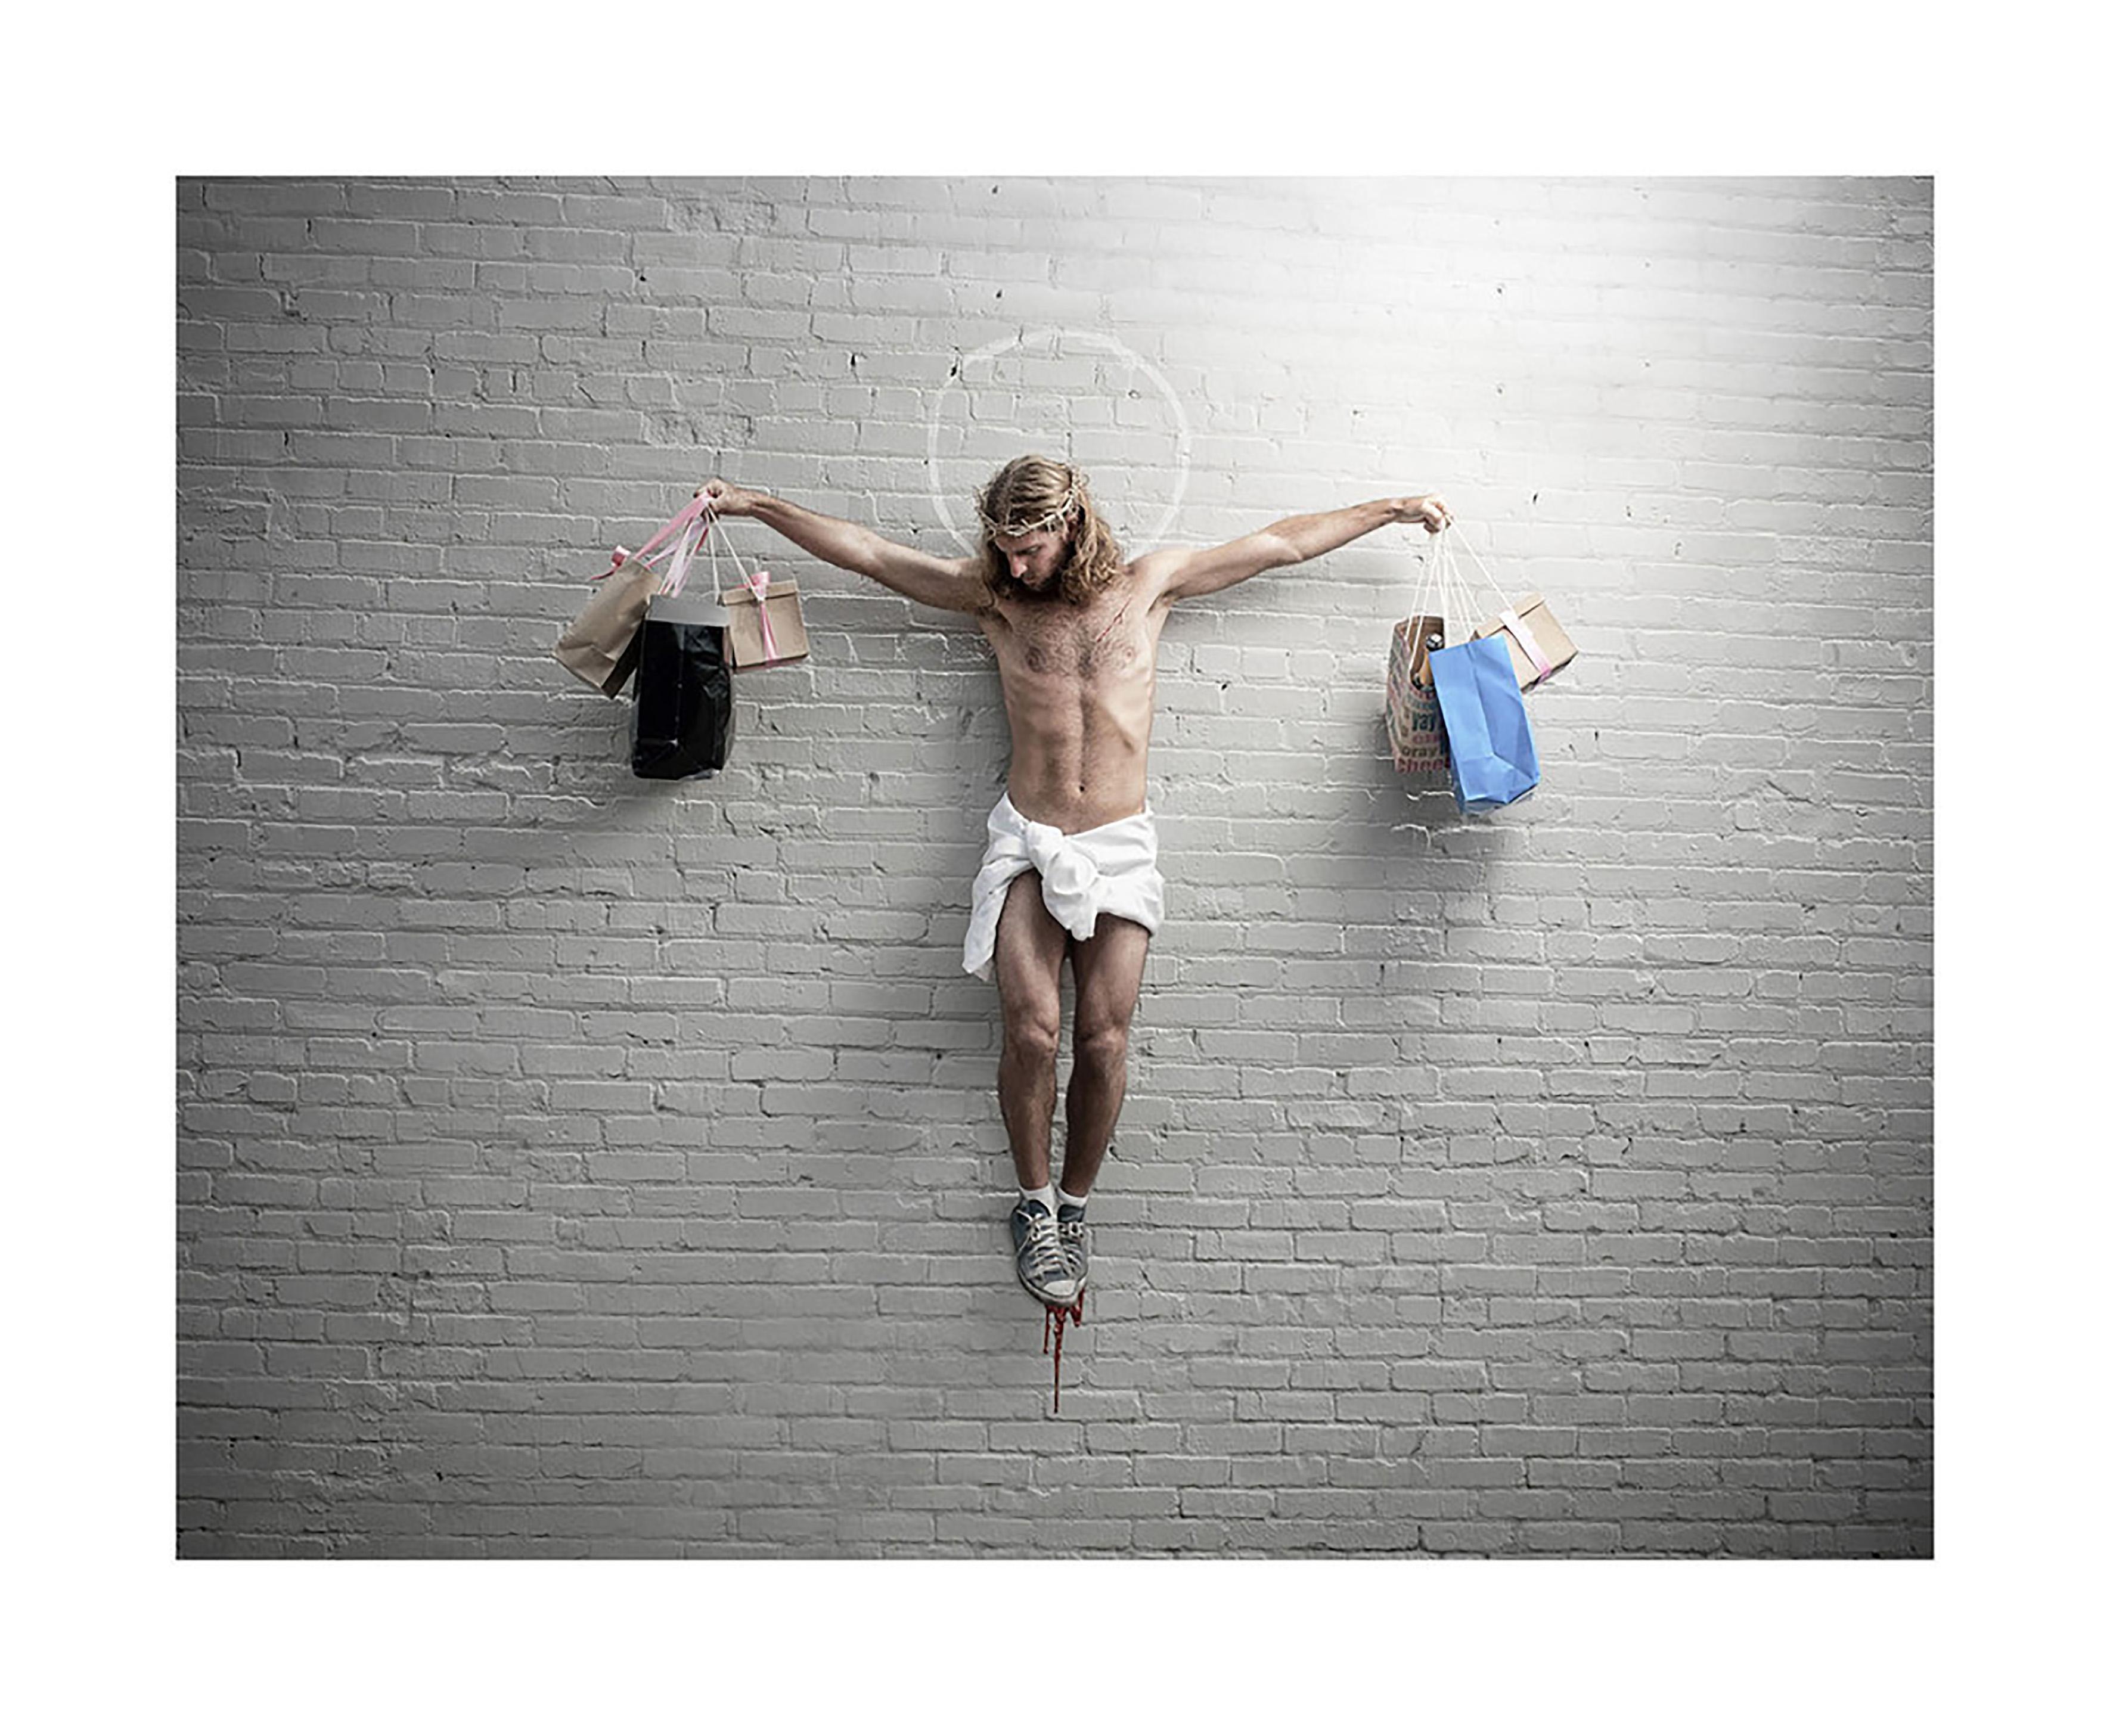 Plastic Jesus Figurative Photograph – ""Jesus mit Einkaufstaschen"" - Limitierte Auflage Fine Art Druck